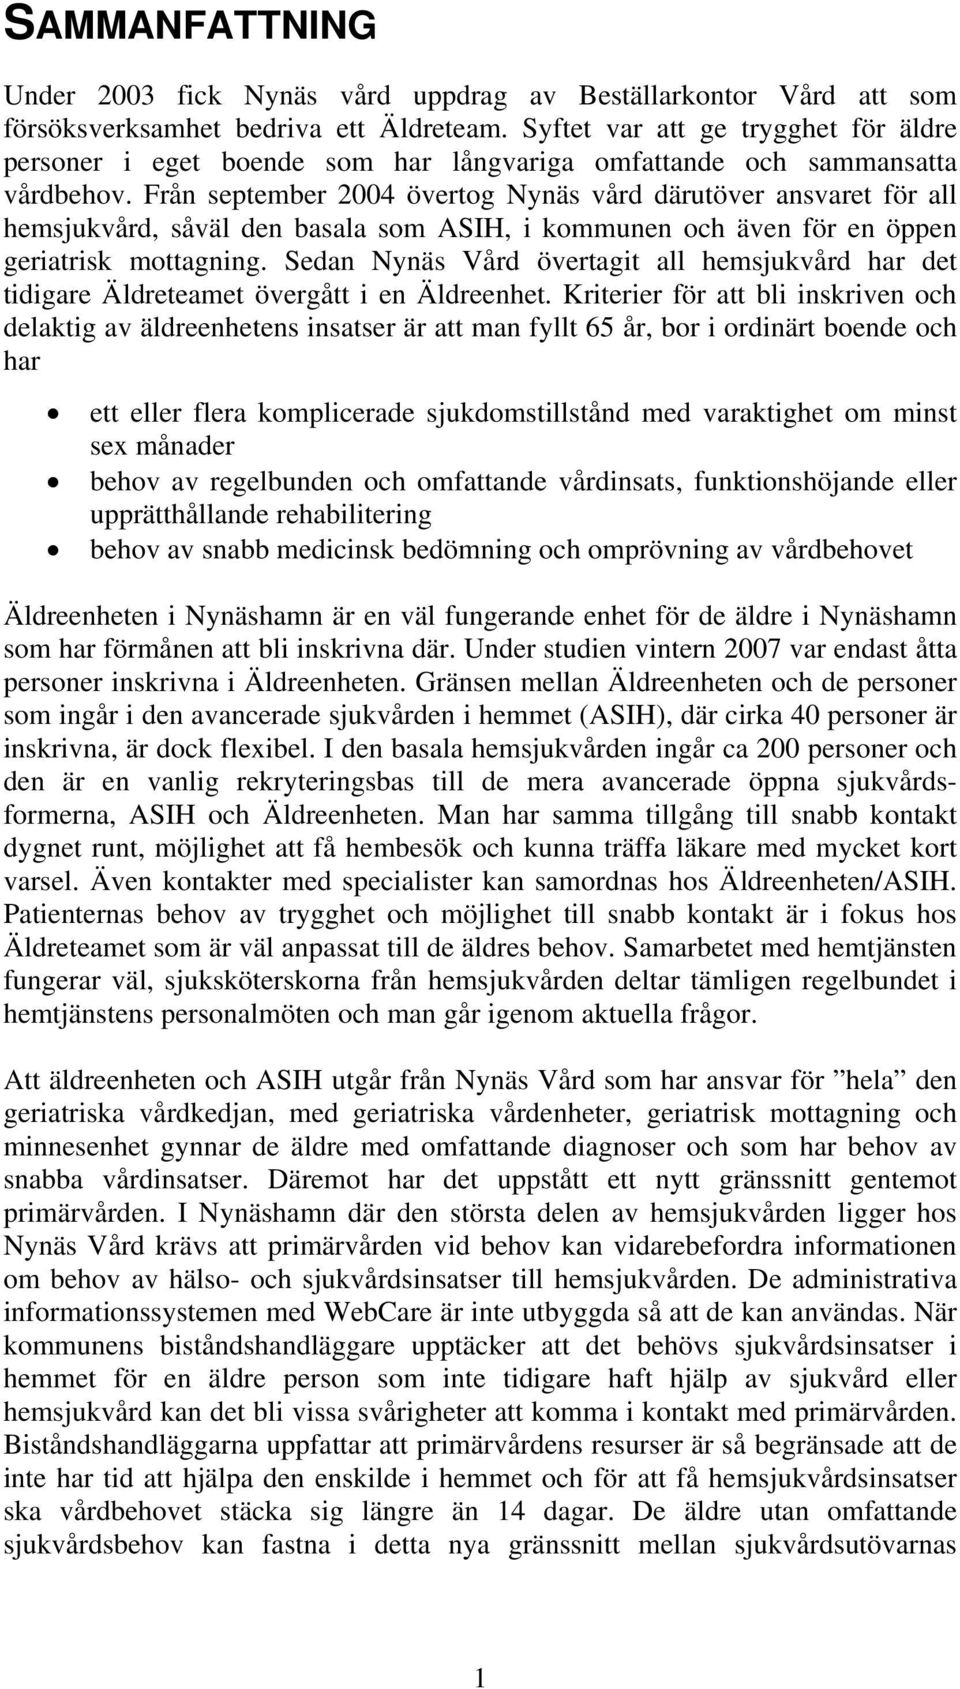 Från september 2004 övertog Nynäs vård därutöver ansvaret för all hemsjukvård, såväl den basala som ASIH, i kommunen och även för en öppen geriatrisk mottagning.